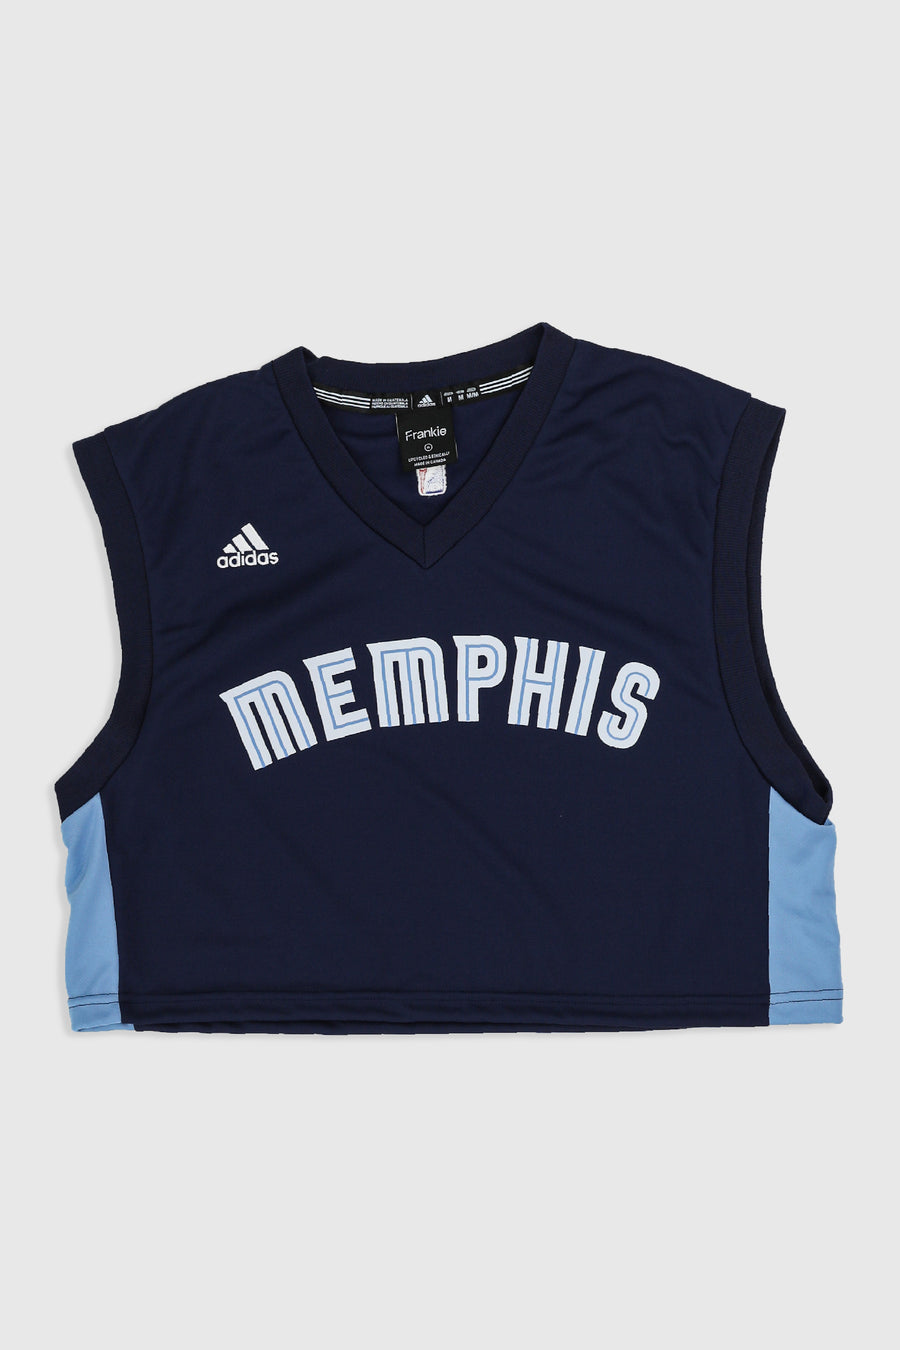 Rework Memphis Grizzlies Crop Jersey - L, XL